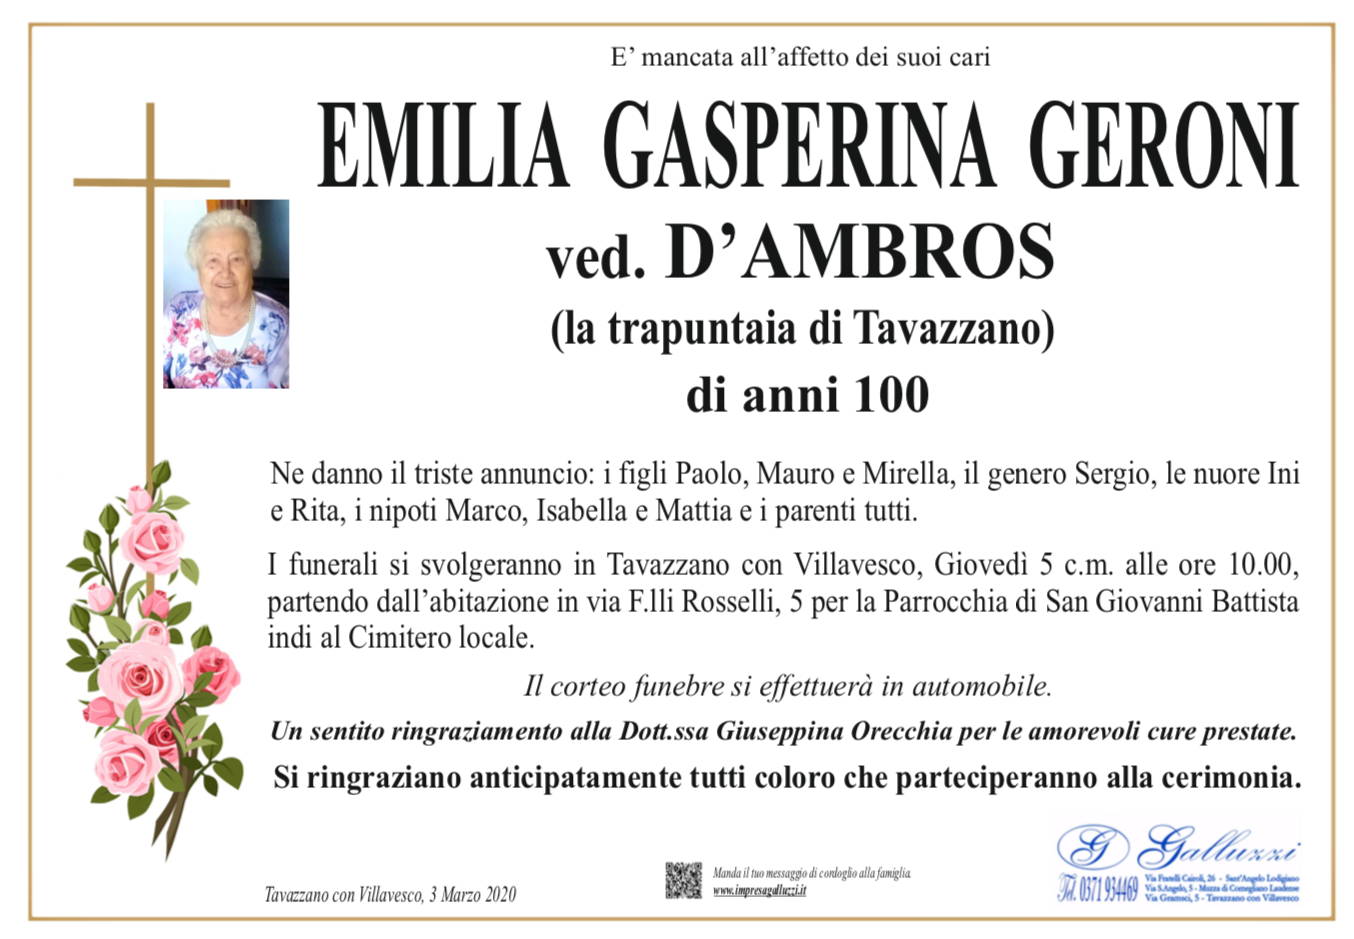 Emilia Gasperina Geroni